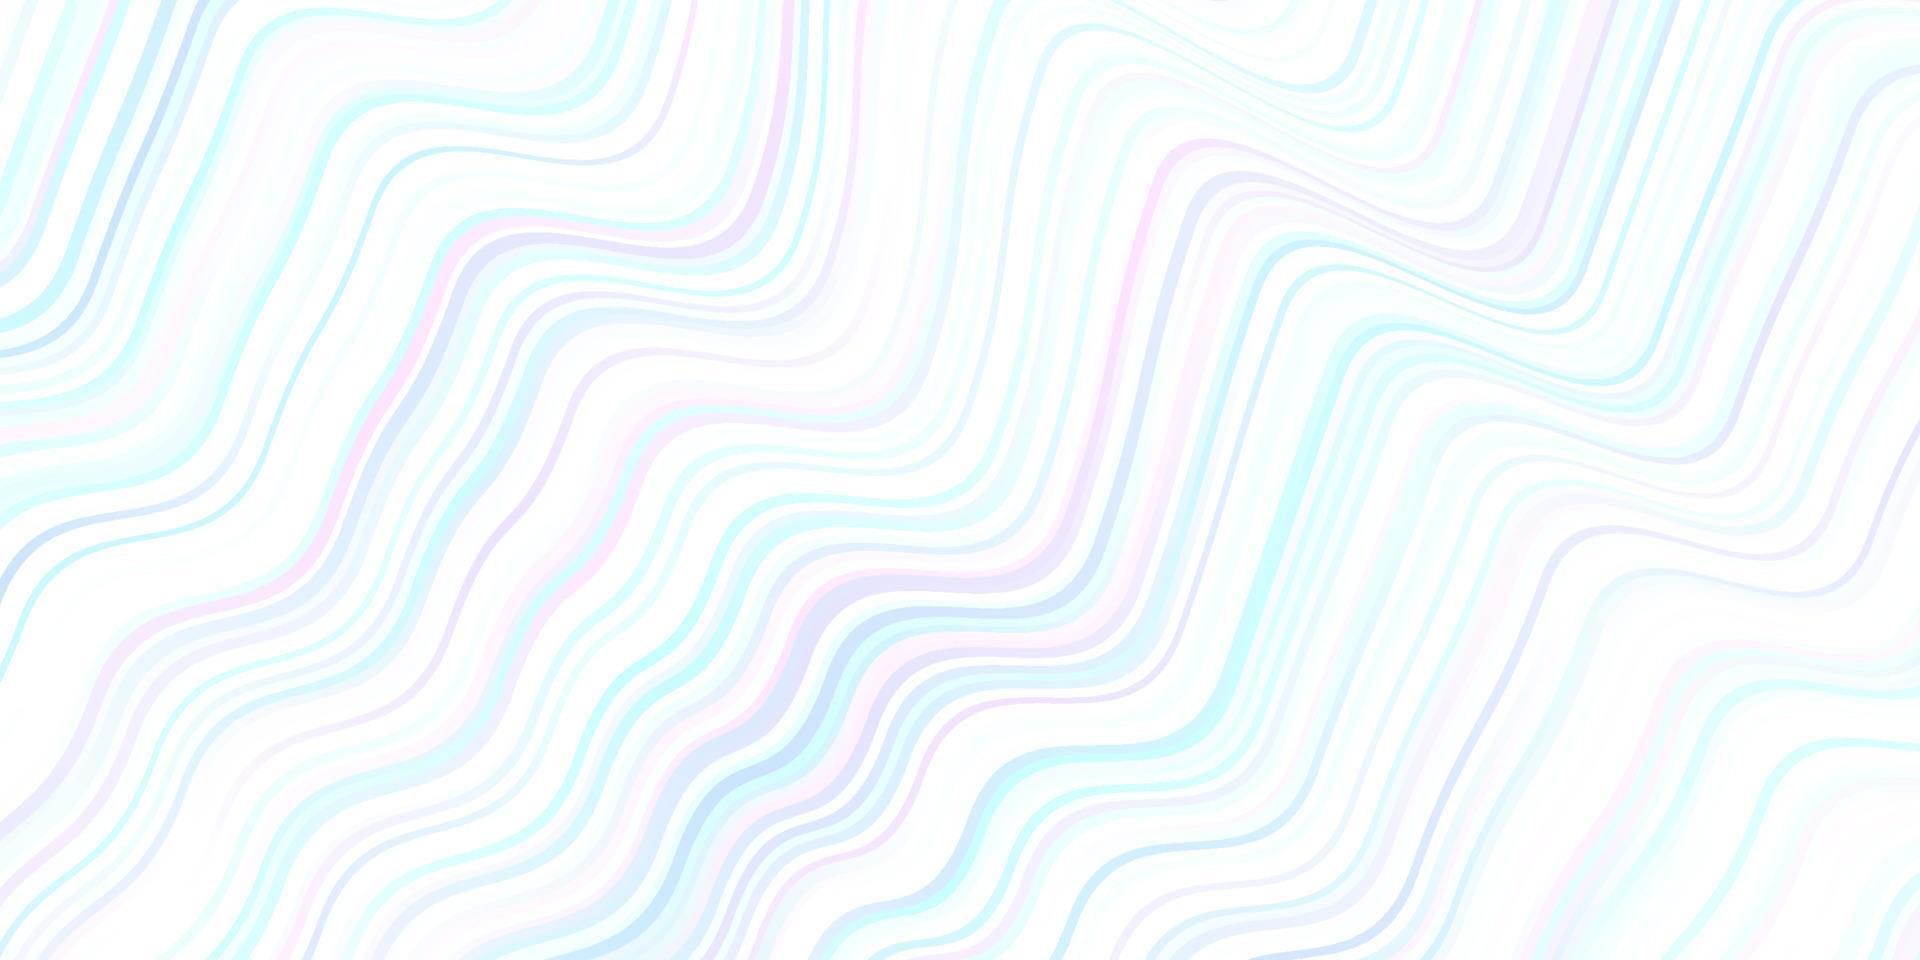 layout de vetor de azul claro com linhas curvas.